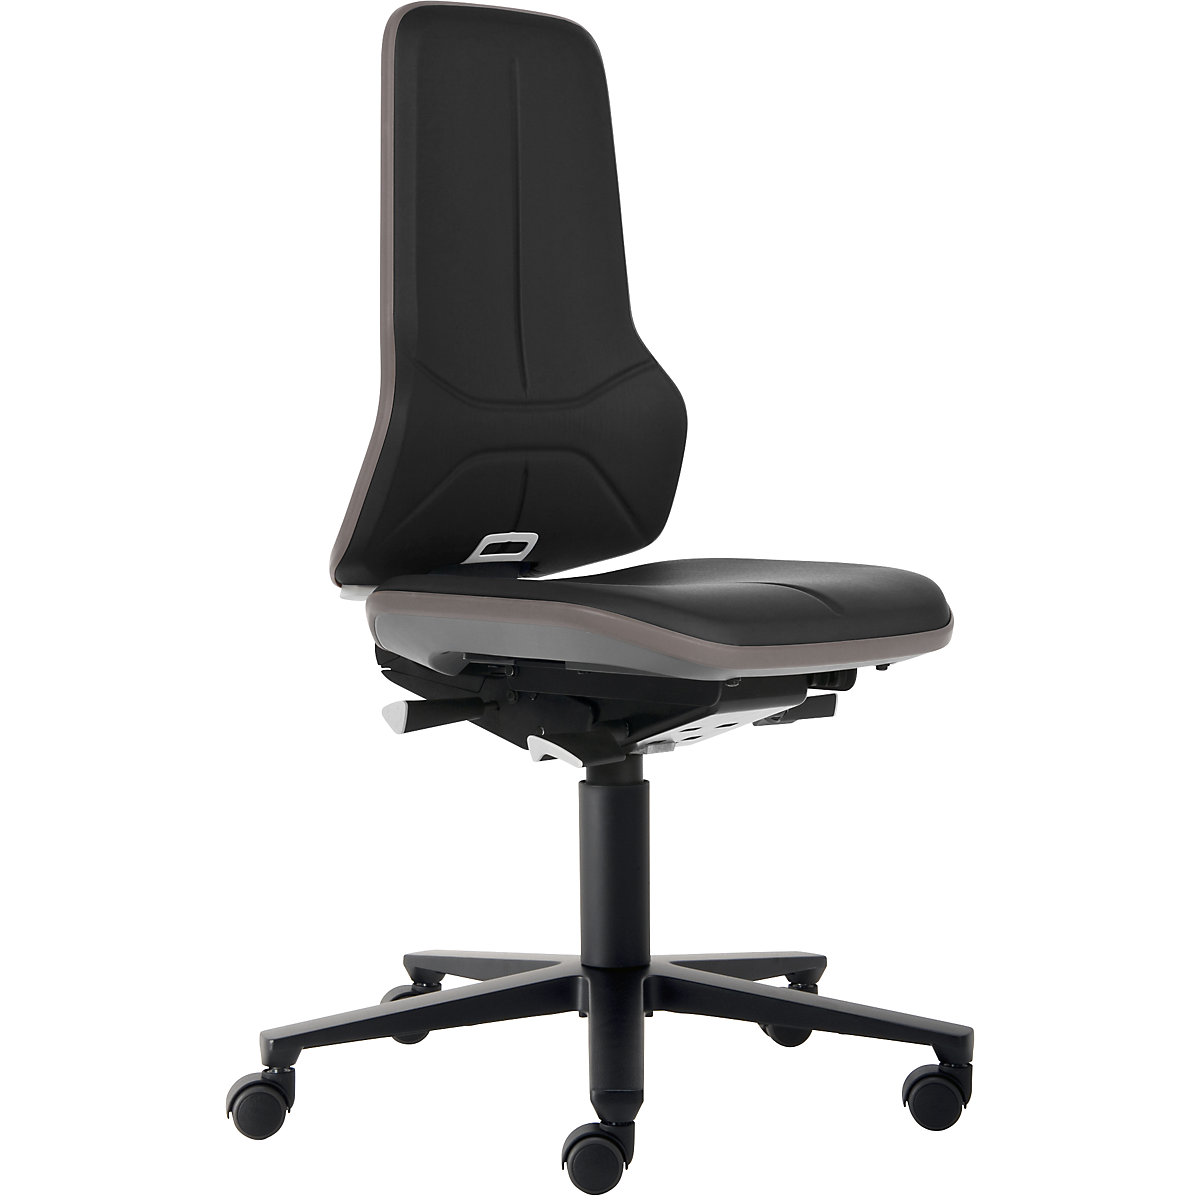 Pracovní otočná židle NEON, kolečka – bimos, synchronní mechanika, koženka, šedý flexibilní pás-7